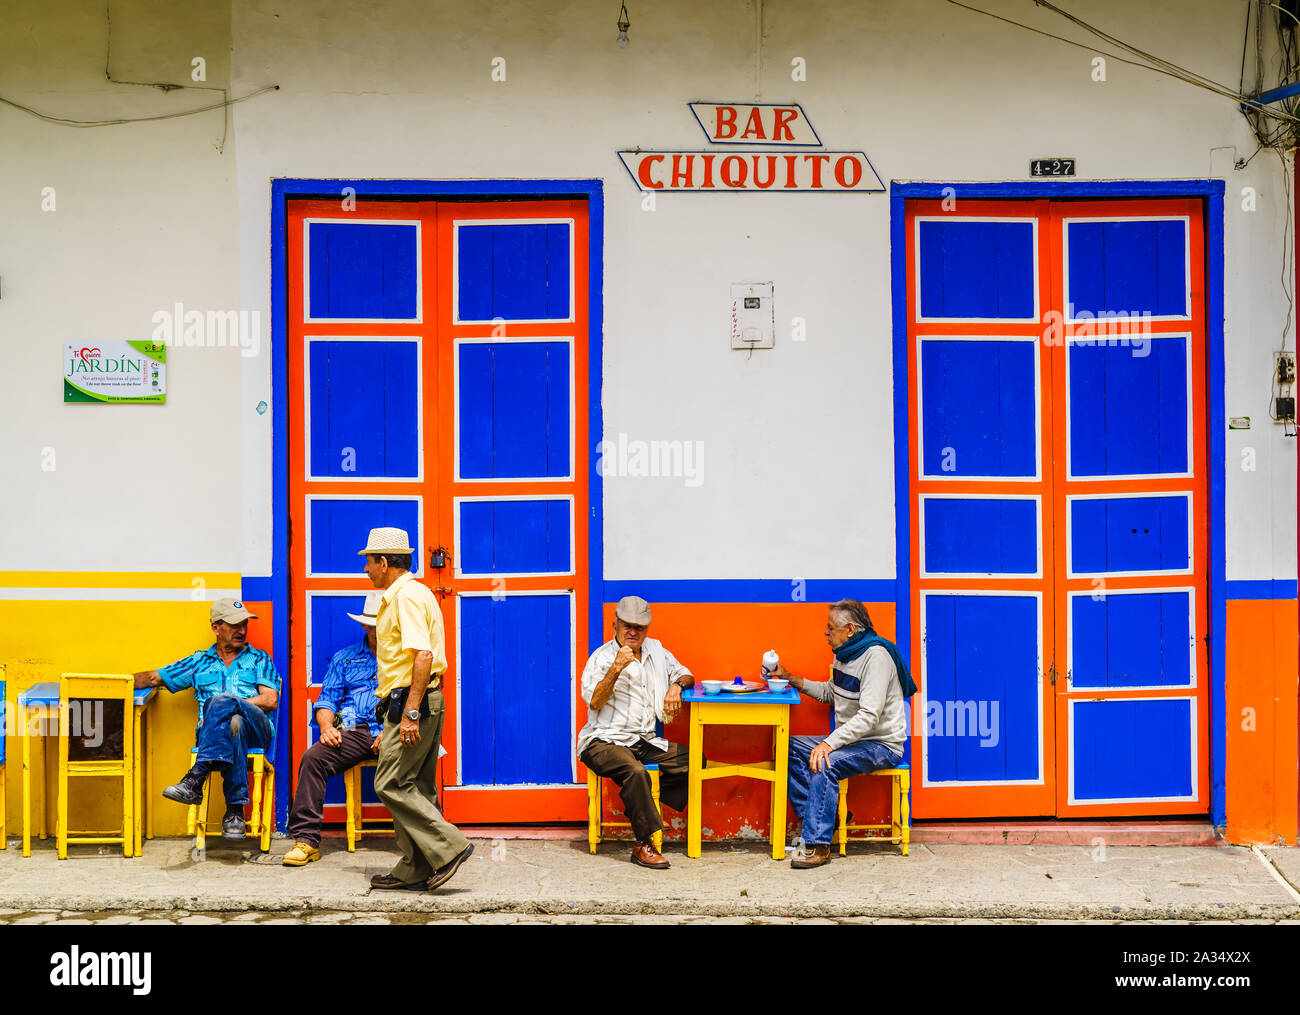 El Jardin, Colombie - Mars 27, 2019 - voir sur les gens assis en face d'un bar dans le centre de la ville Banque D'Images